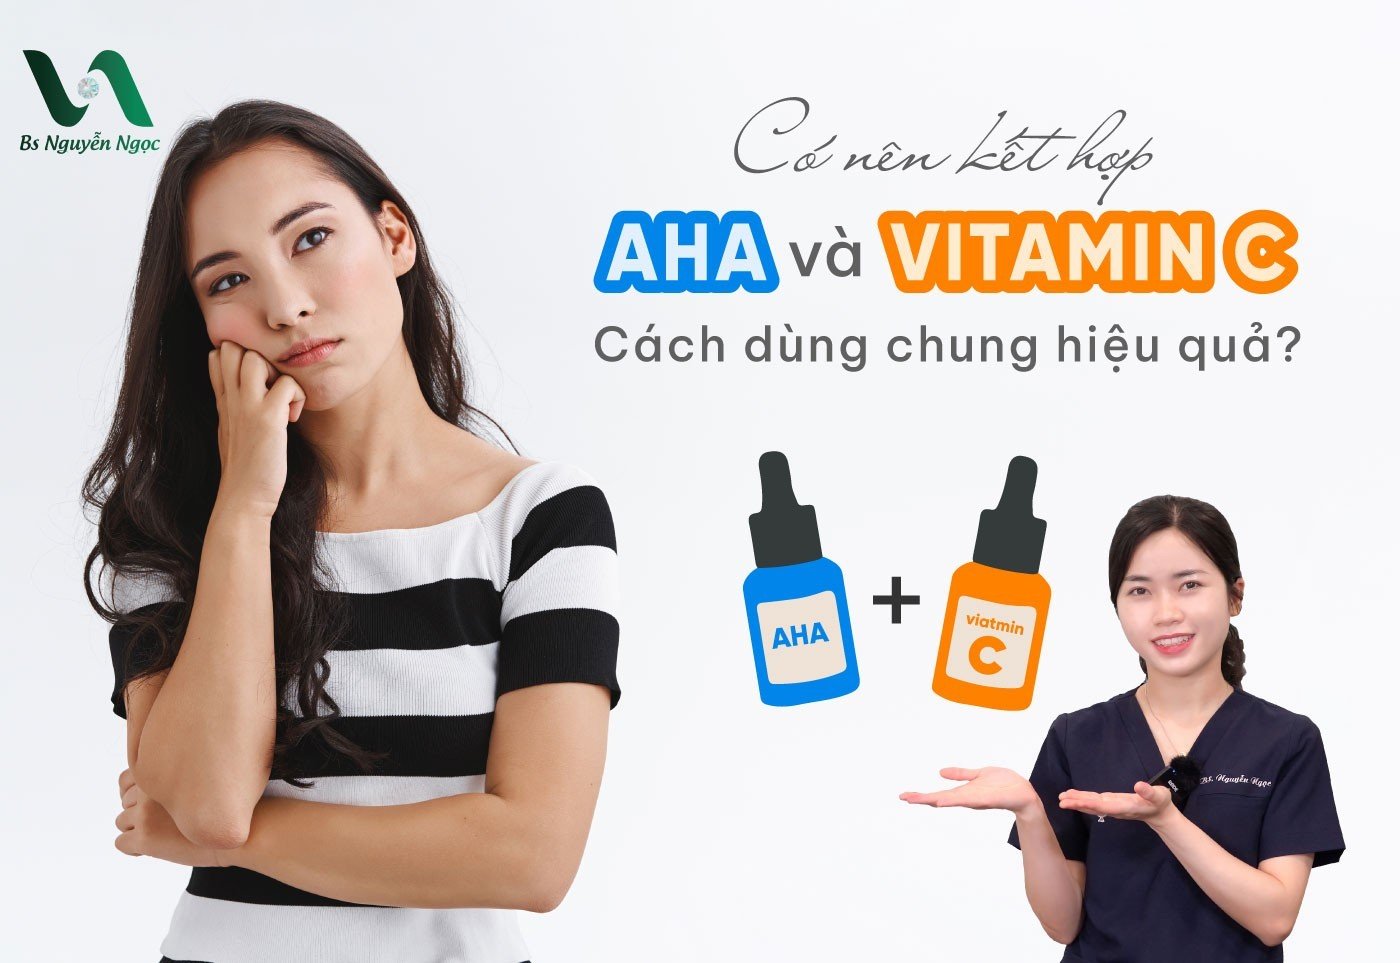 Có nên kết hợp AHA và Vitamin C? Cách dùng chung hiệu quả?